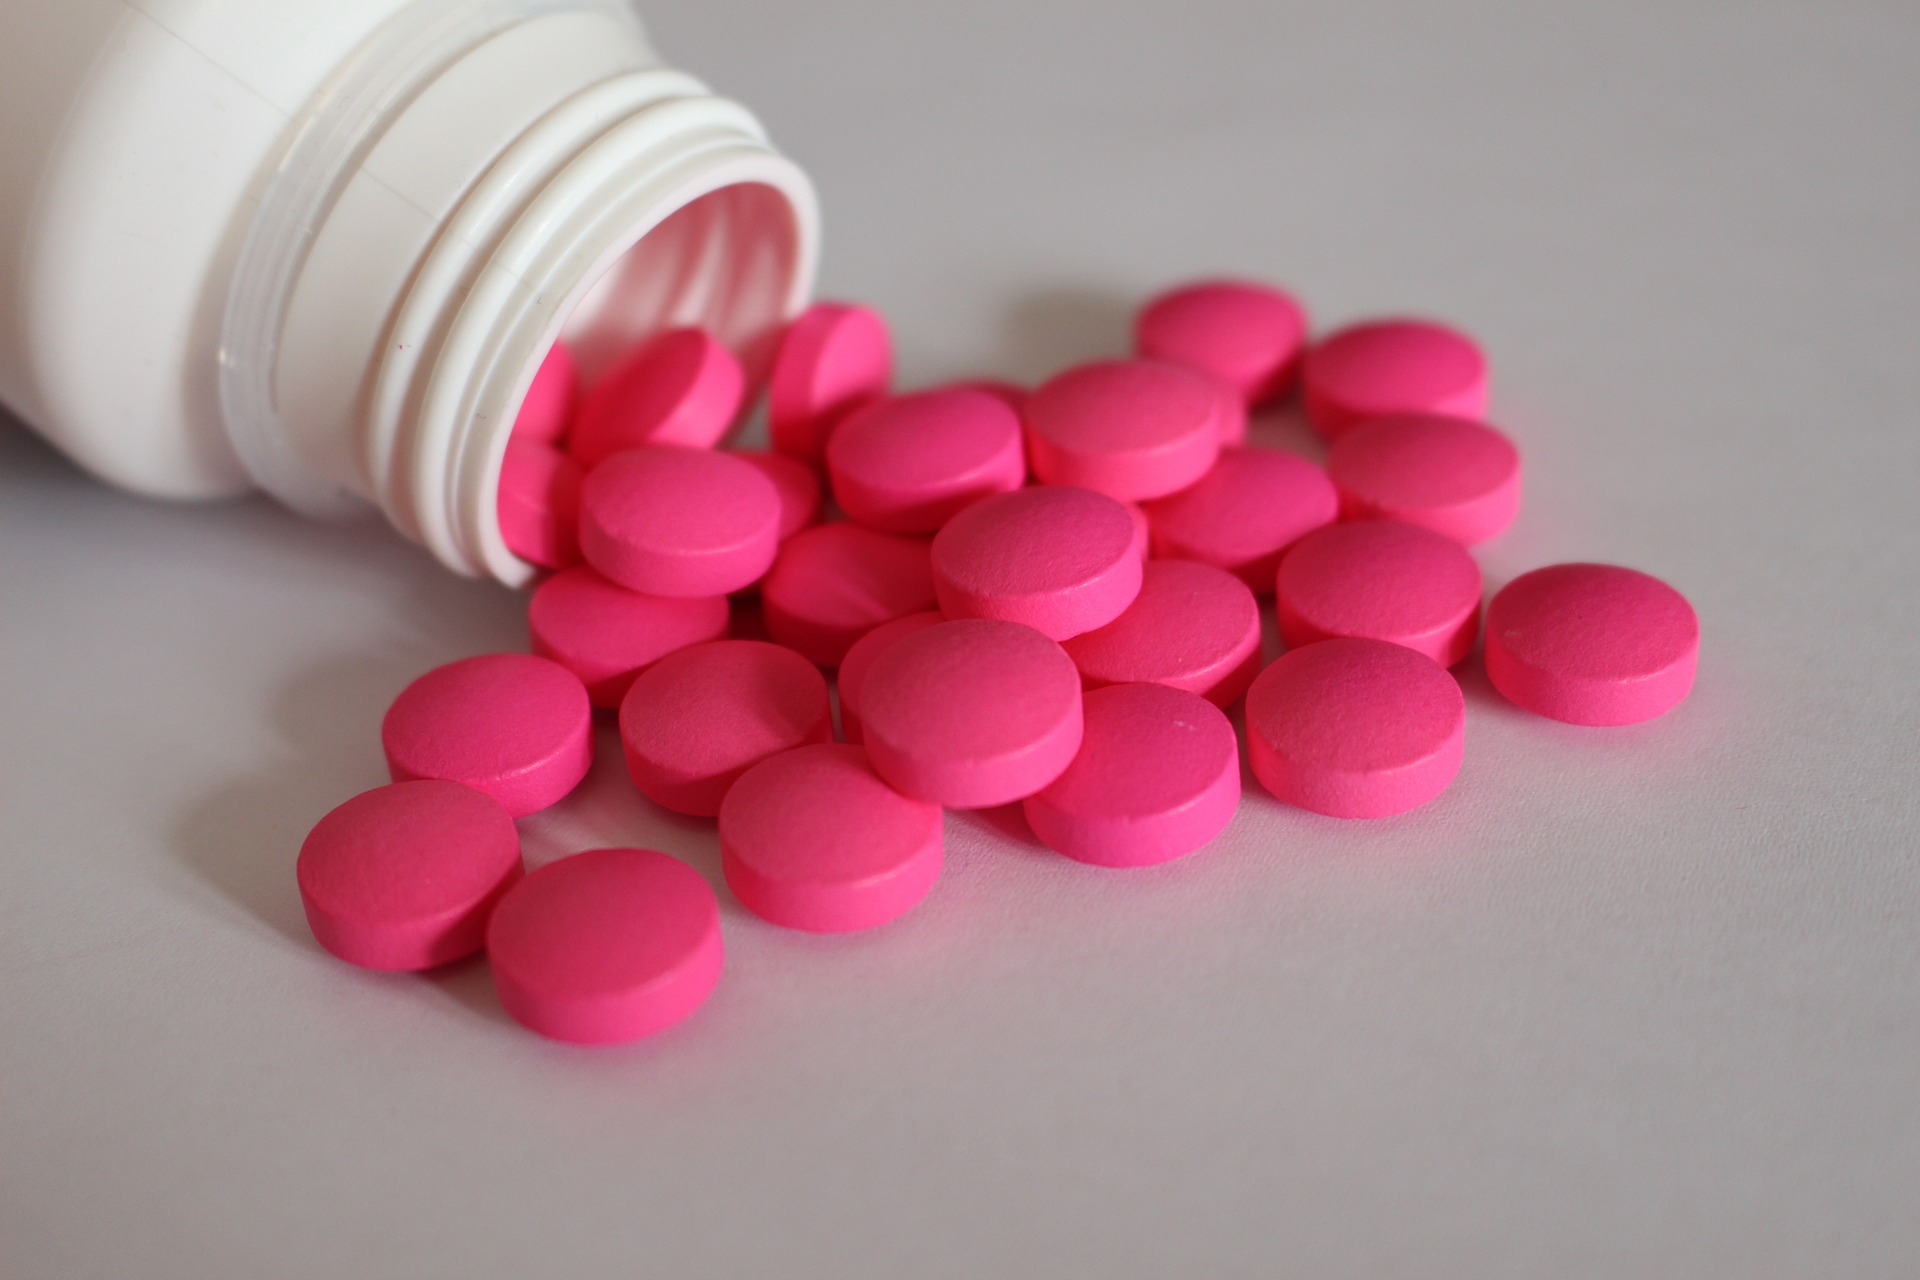 Ibuprofen für den kurzfristigen Libidokick?